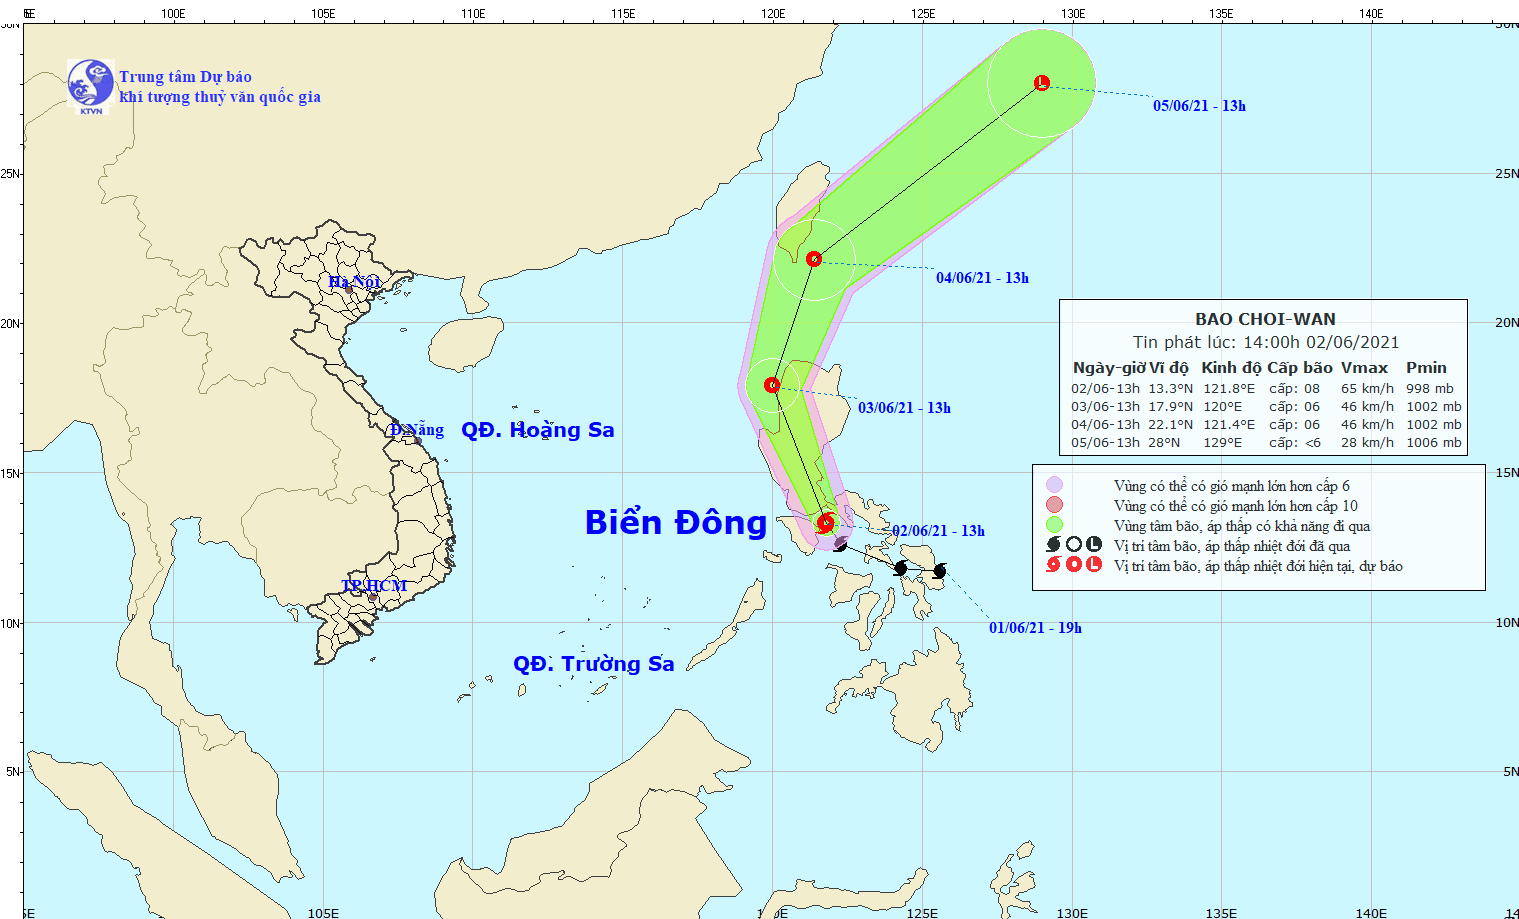 Tác động của bão Choi-wan, vùng biển phía Đông khu vực Bắc và giữa Biển Đông sẽ có mưa dông, gió mạnh cấp 6, giật cấp 7-8